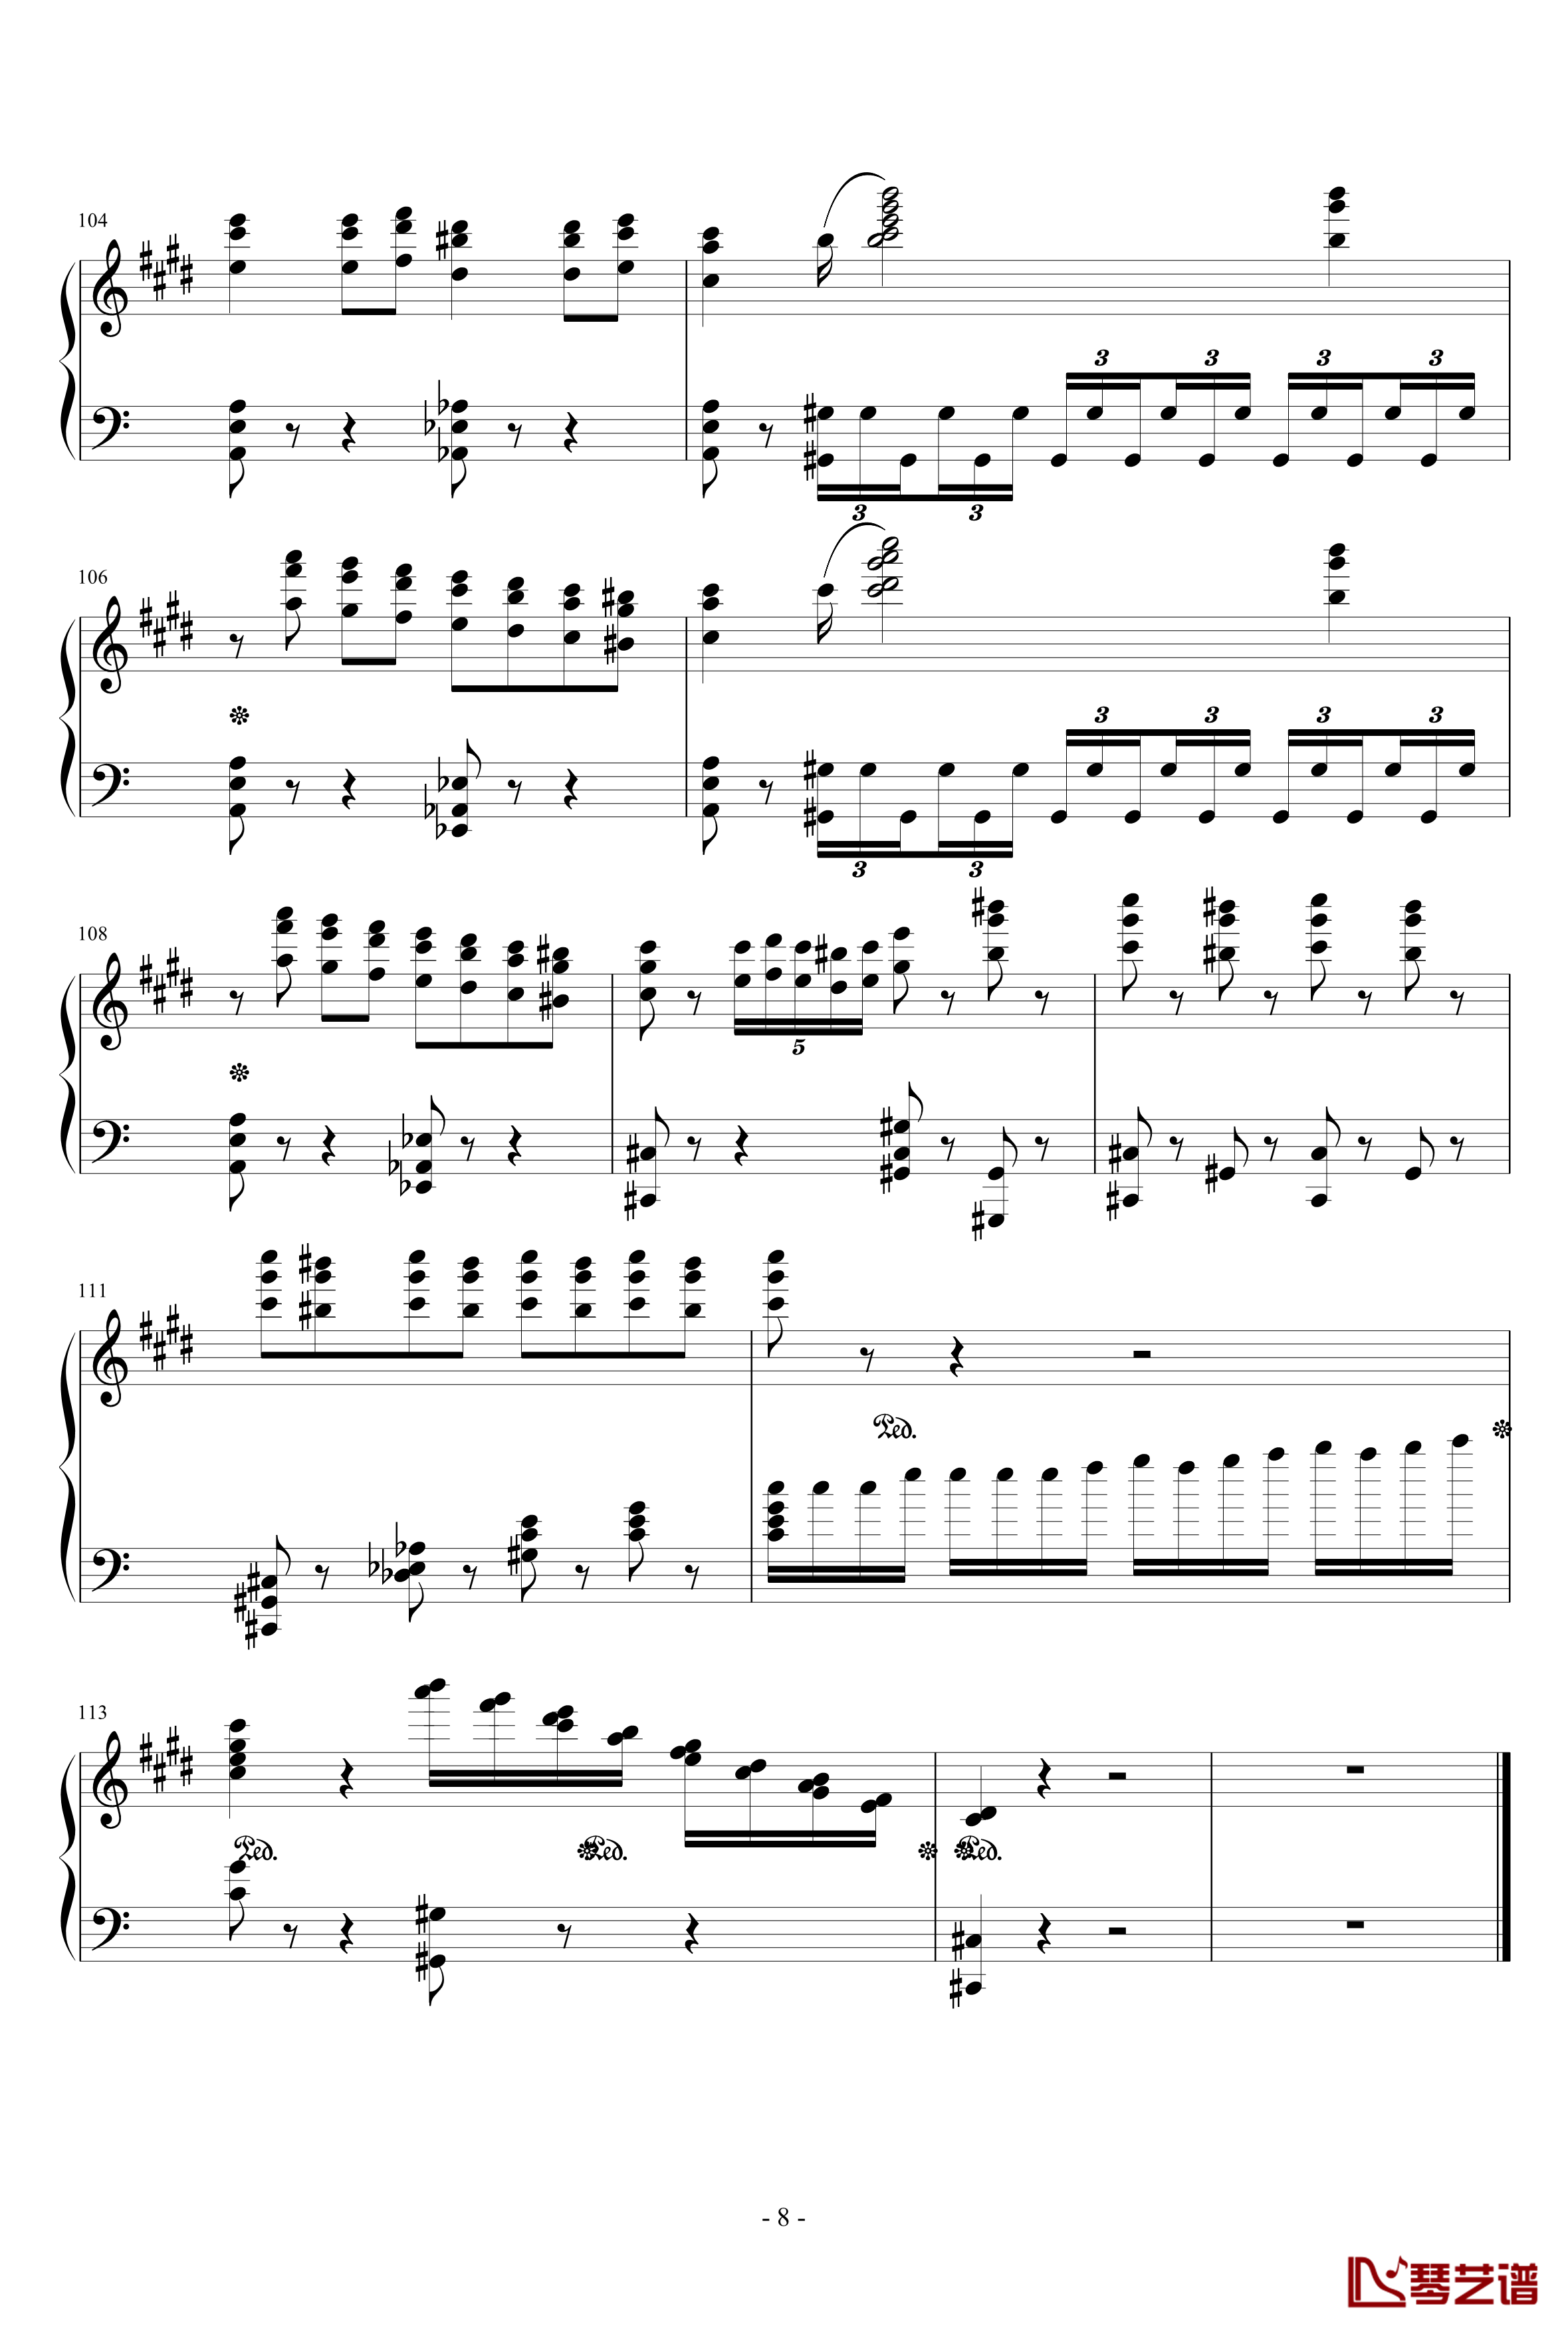 悲伤·第三乐章钢琴谱-贝多芬-beethoven8